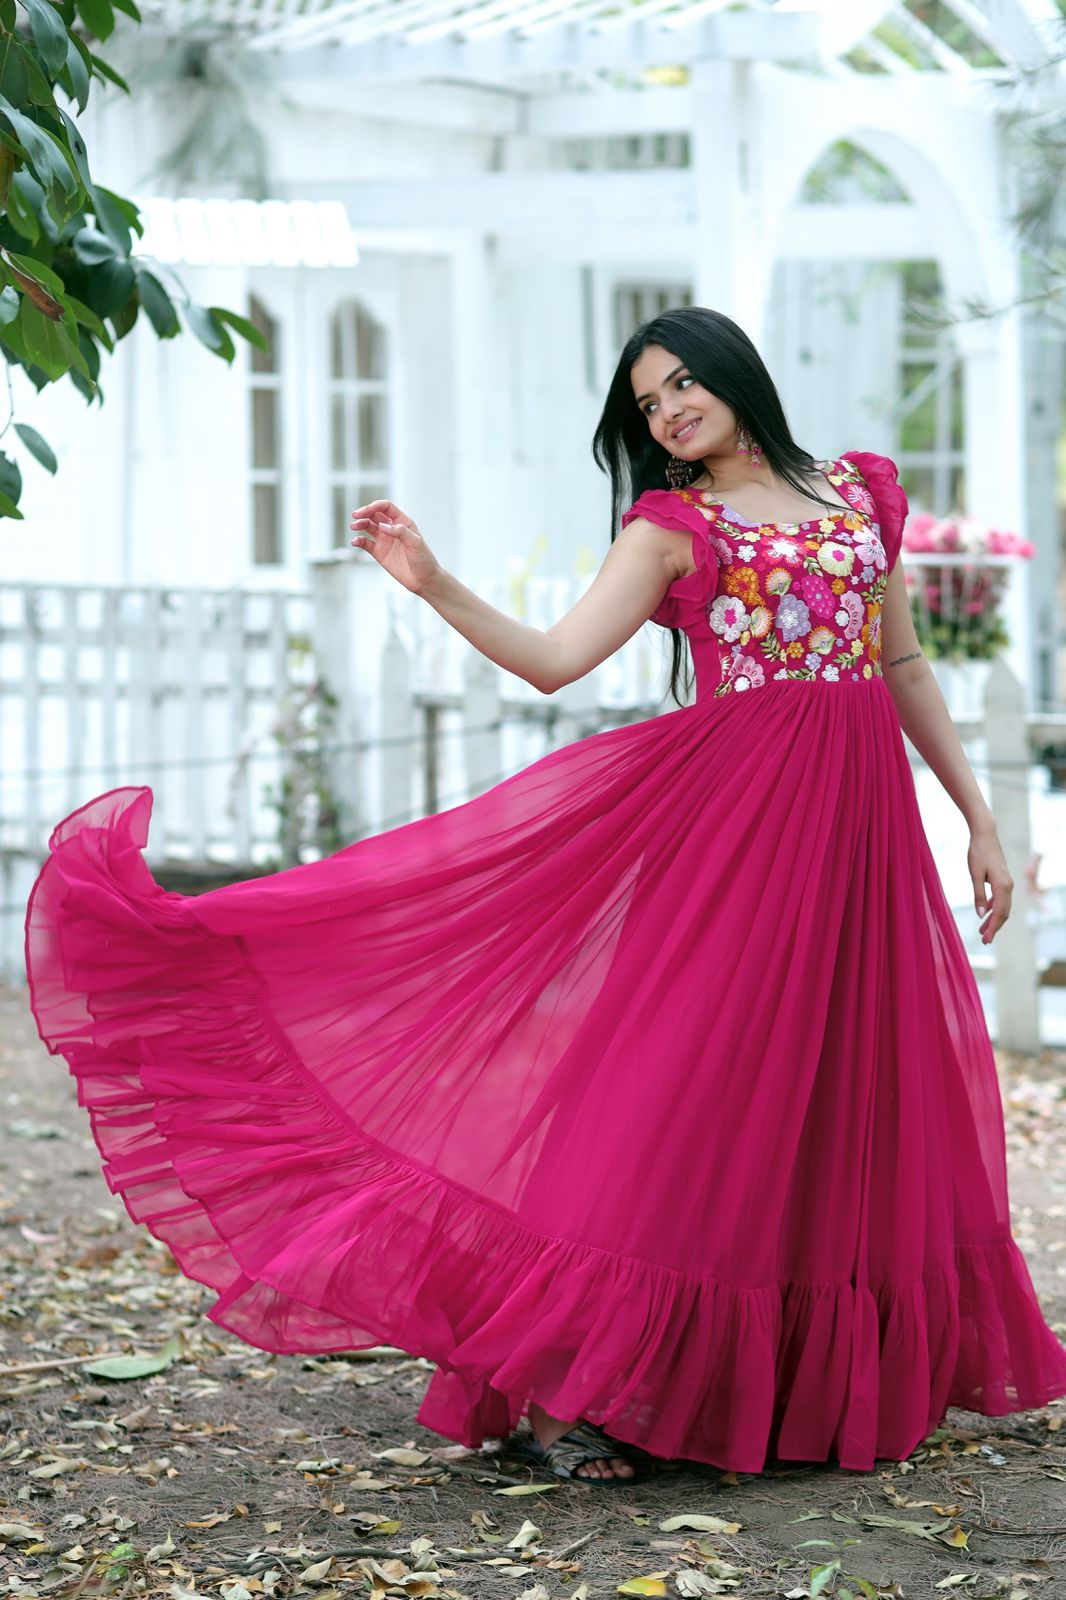 Buy a Onion Pink Beautiful Stylish Fancy Party Wear Dress On Rutbaa